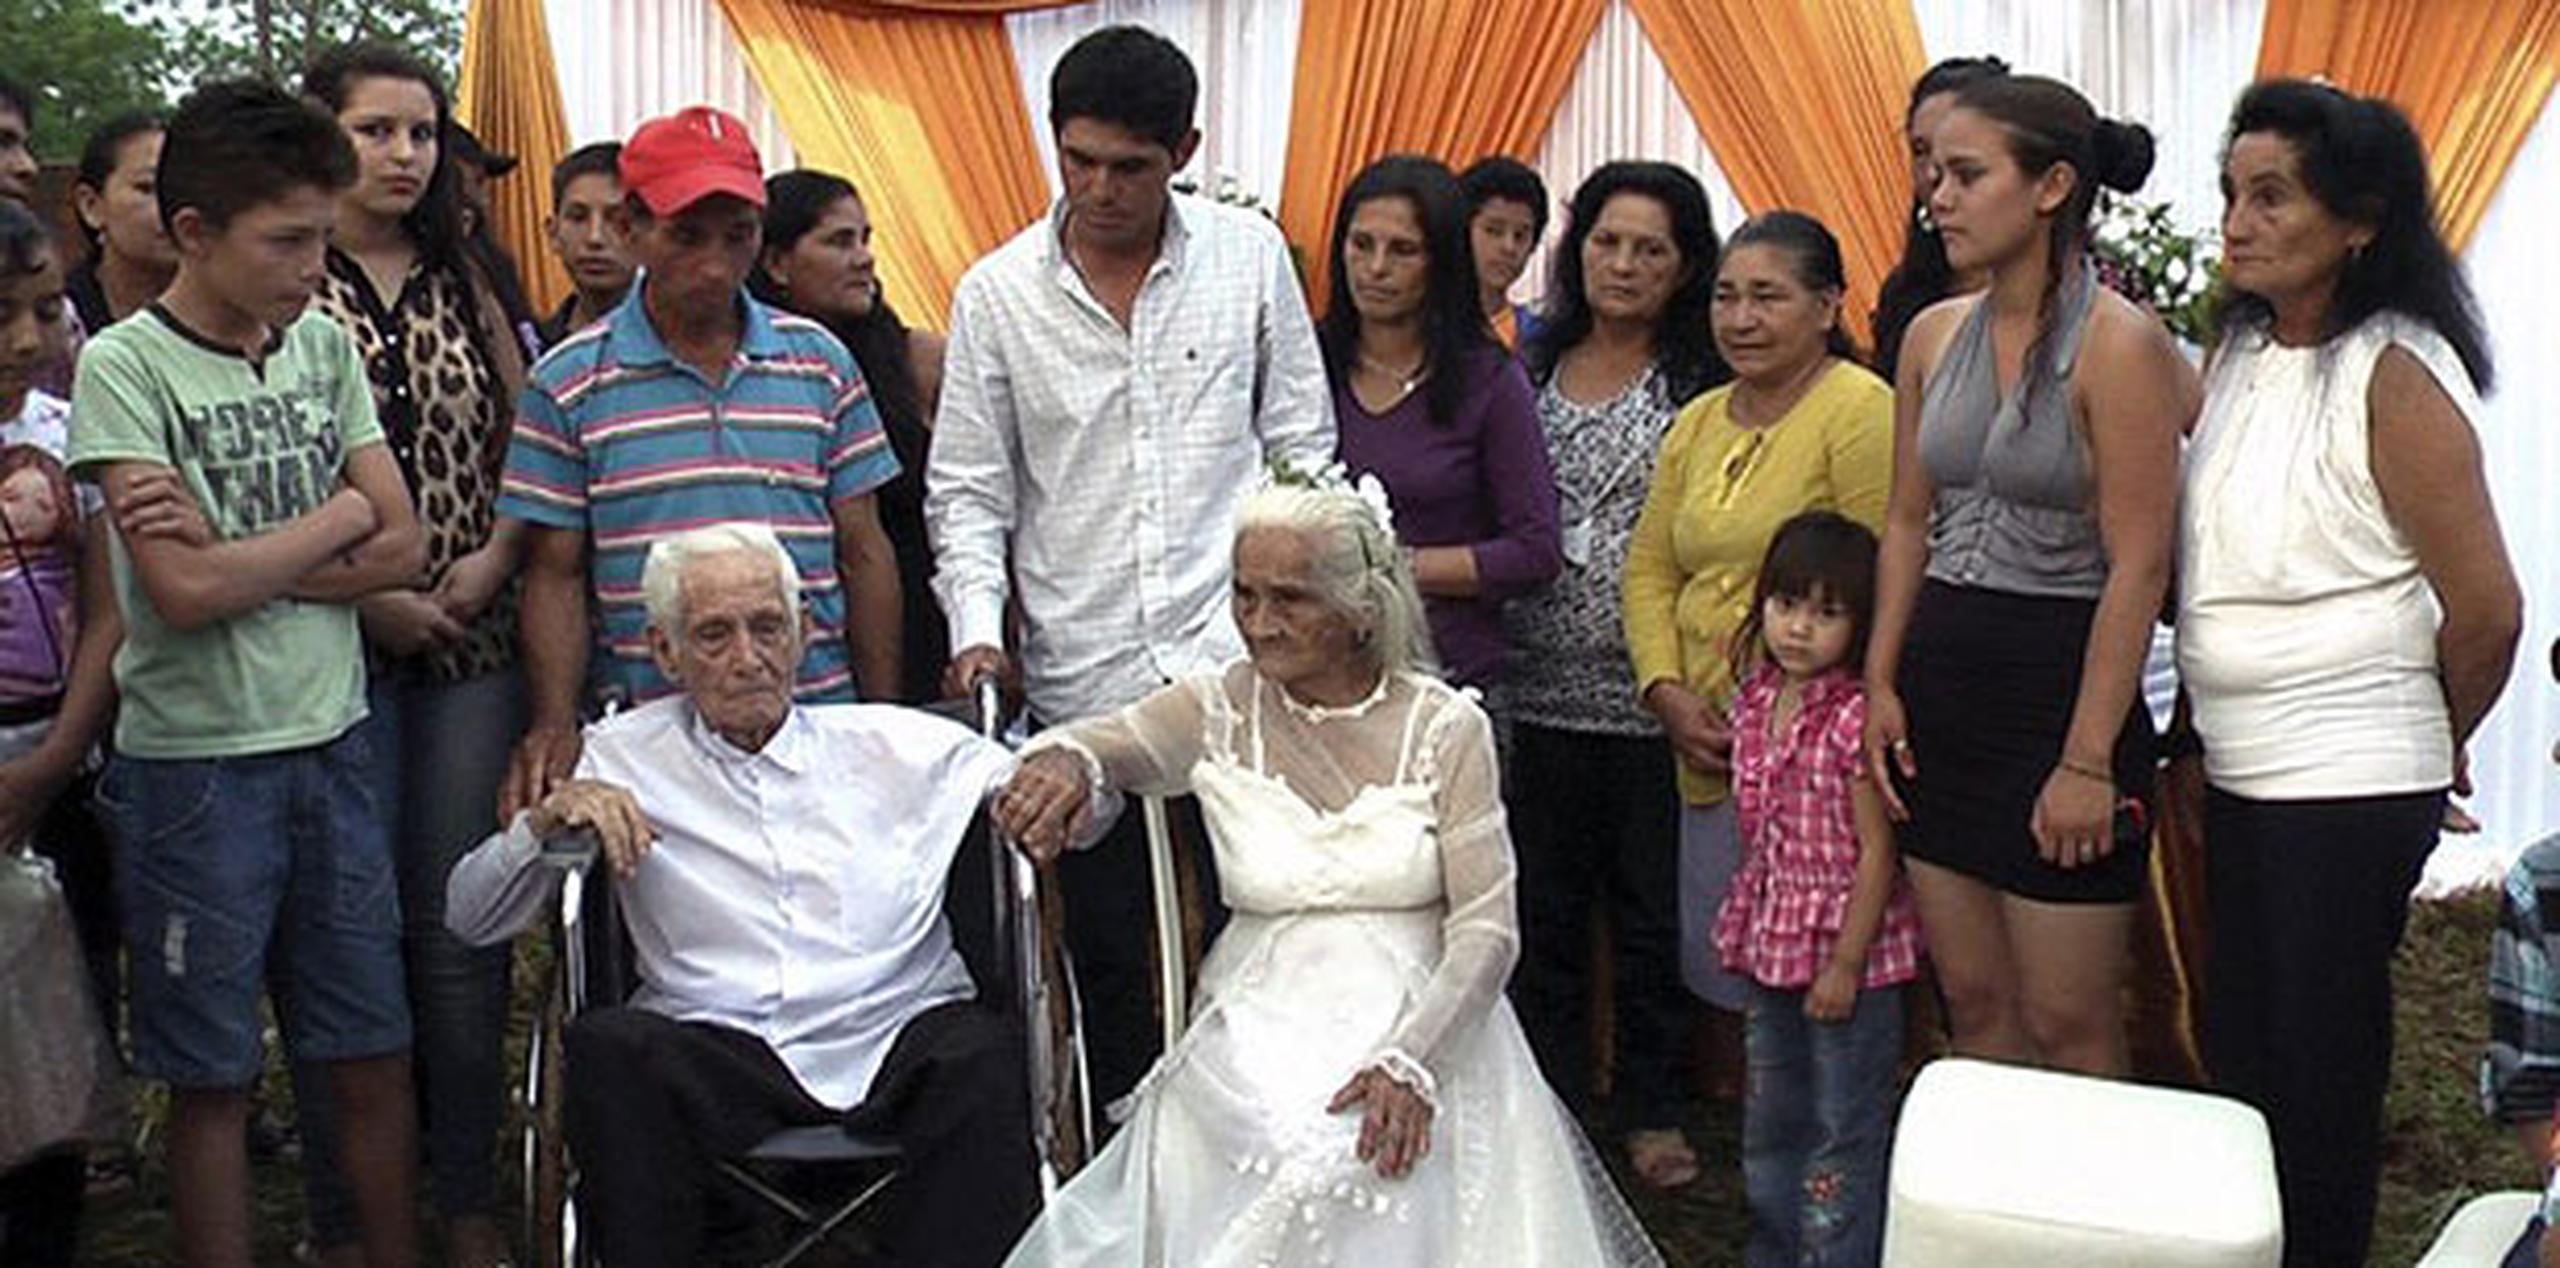 La pareja tiene 8 hijos, 50 nietos, 35 bisnietos y 20 tataranietos, acotó el sacerdote. (AFP)